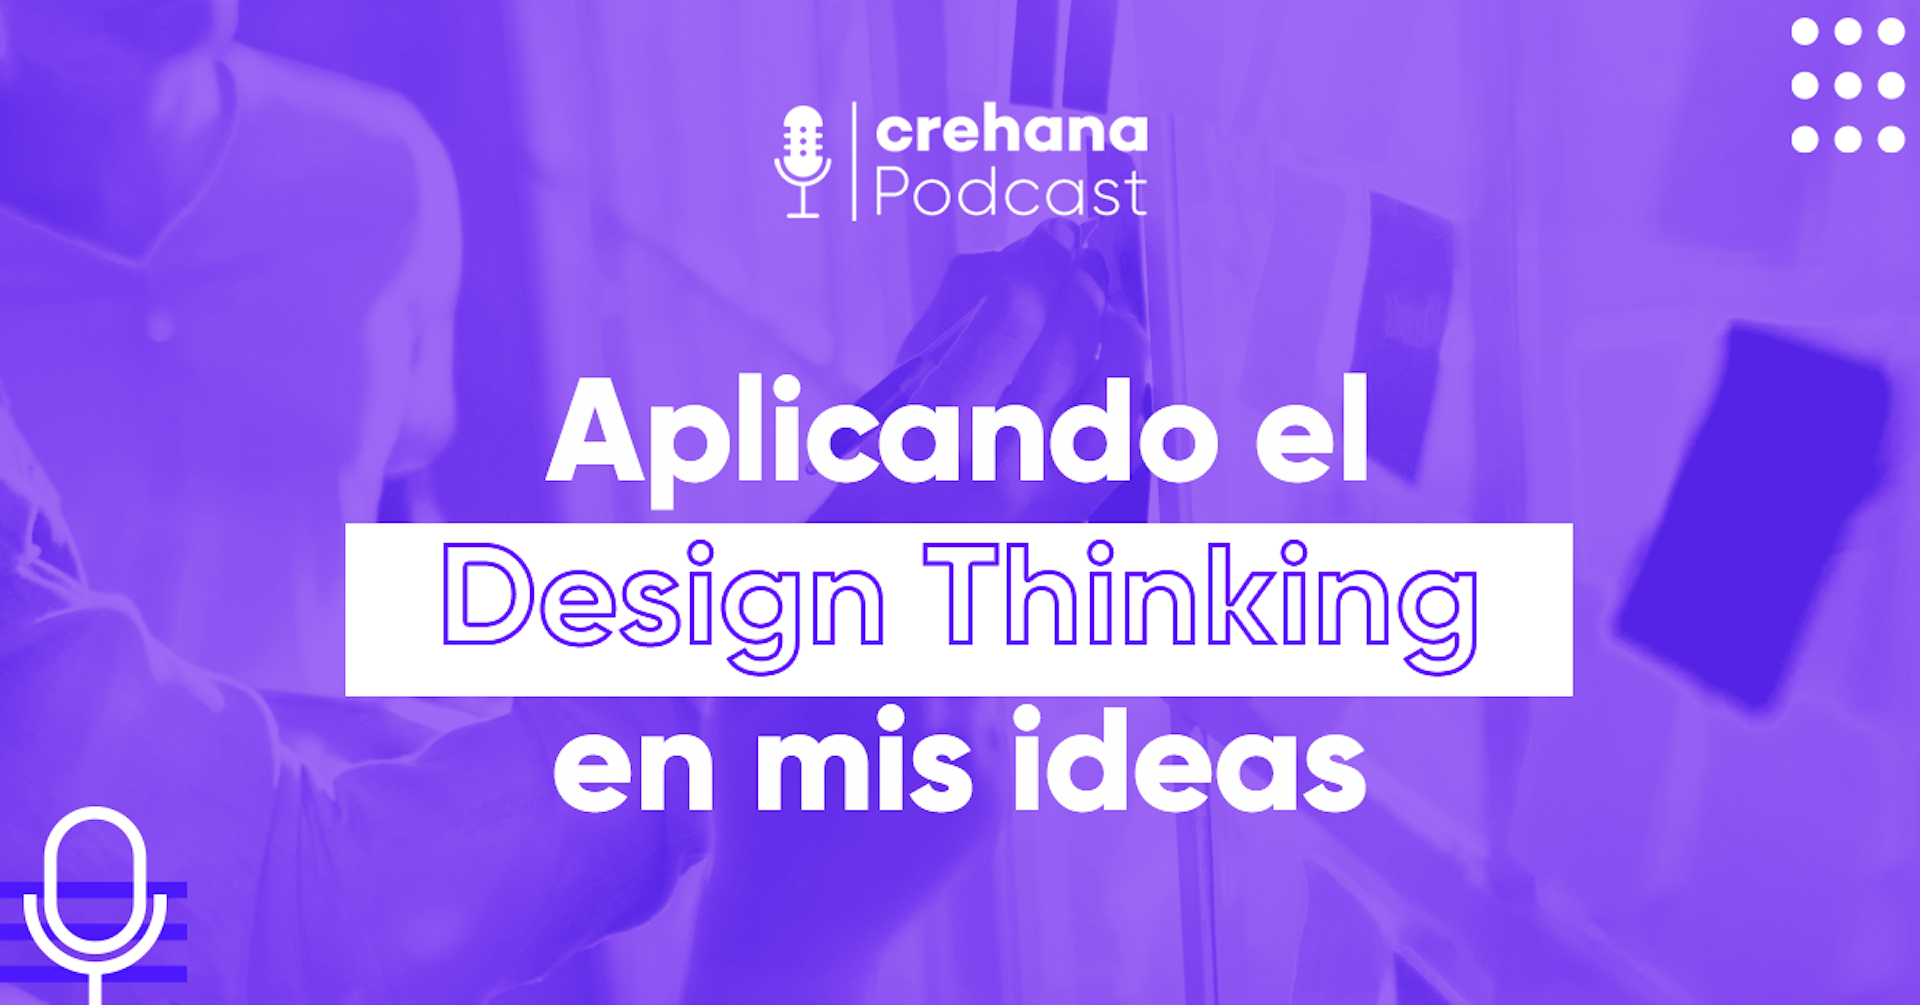 Crehana Podcast: Aplicando el Design Thinking en mis ideas